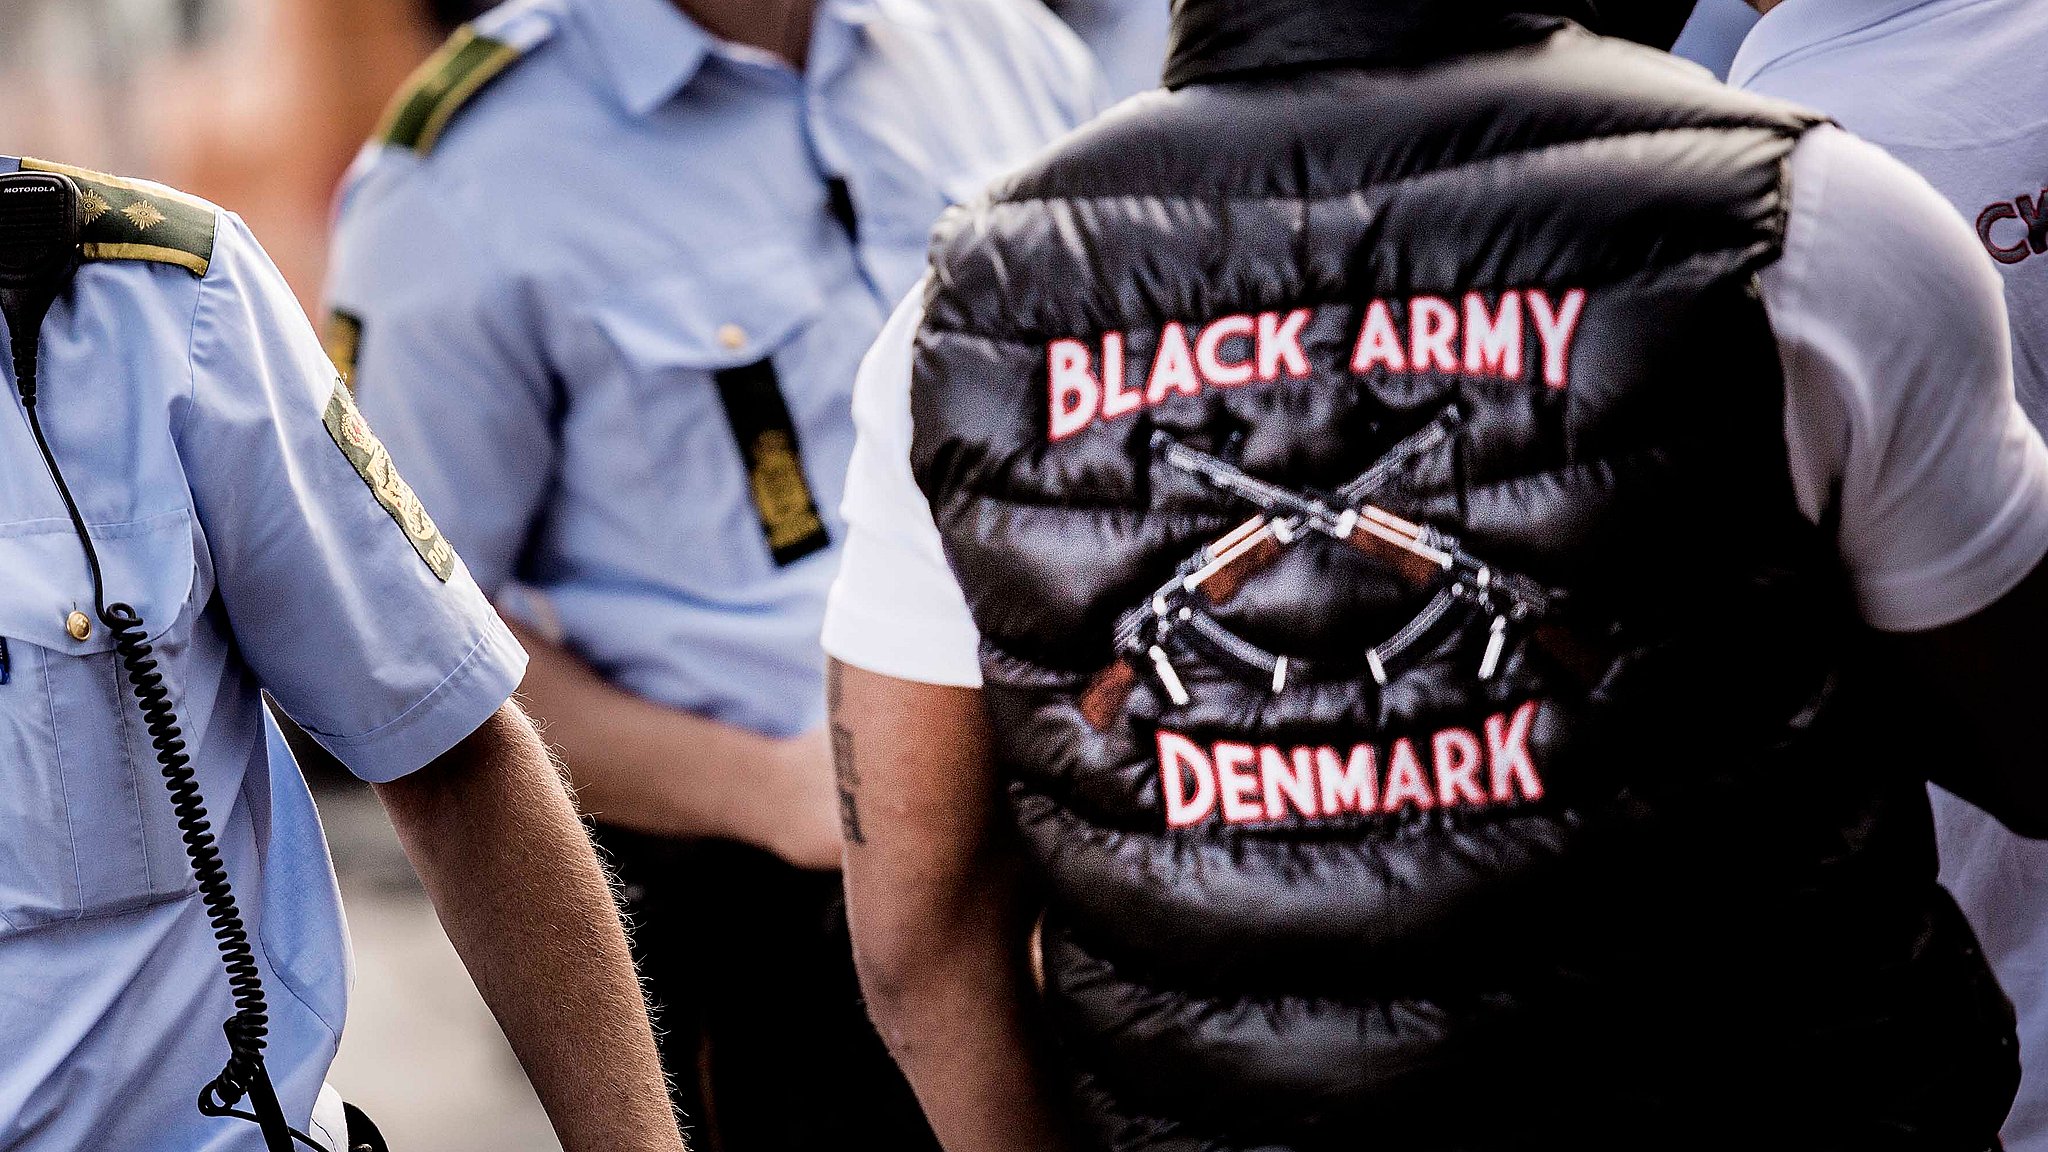 etiket Skubbe sammenholdt Black Army marcherer ind i Aarhus | TV2 Fyn